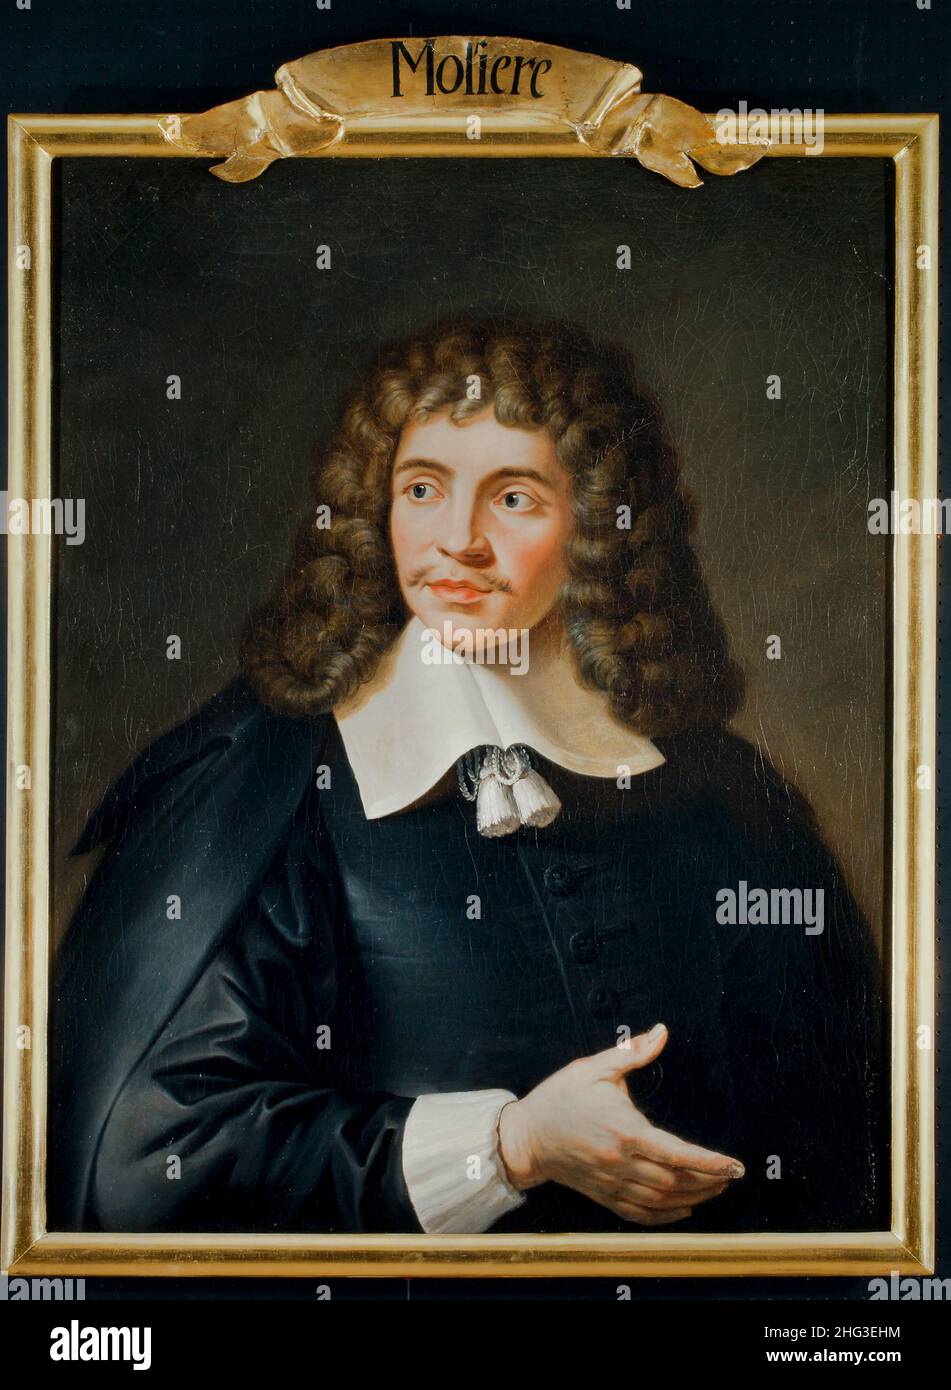 La peinture à l'huile de Iohann Baptista Poquelin von Moliere, datant du 19th siècle.Jean-Baptiste Poquelin (1622 – 1673), connu sous le nom de Molière, était un F Banque D'Images